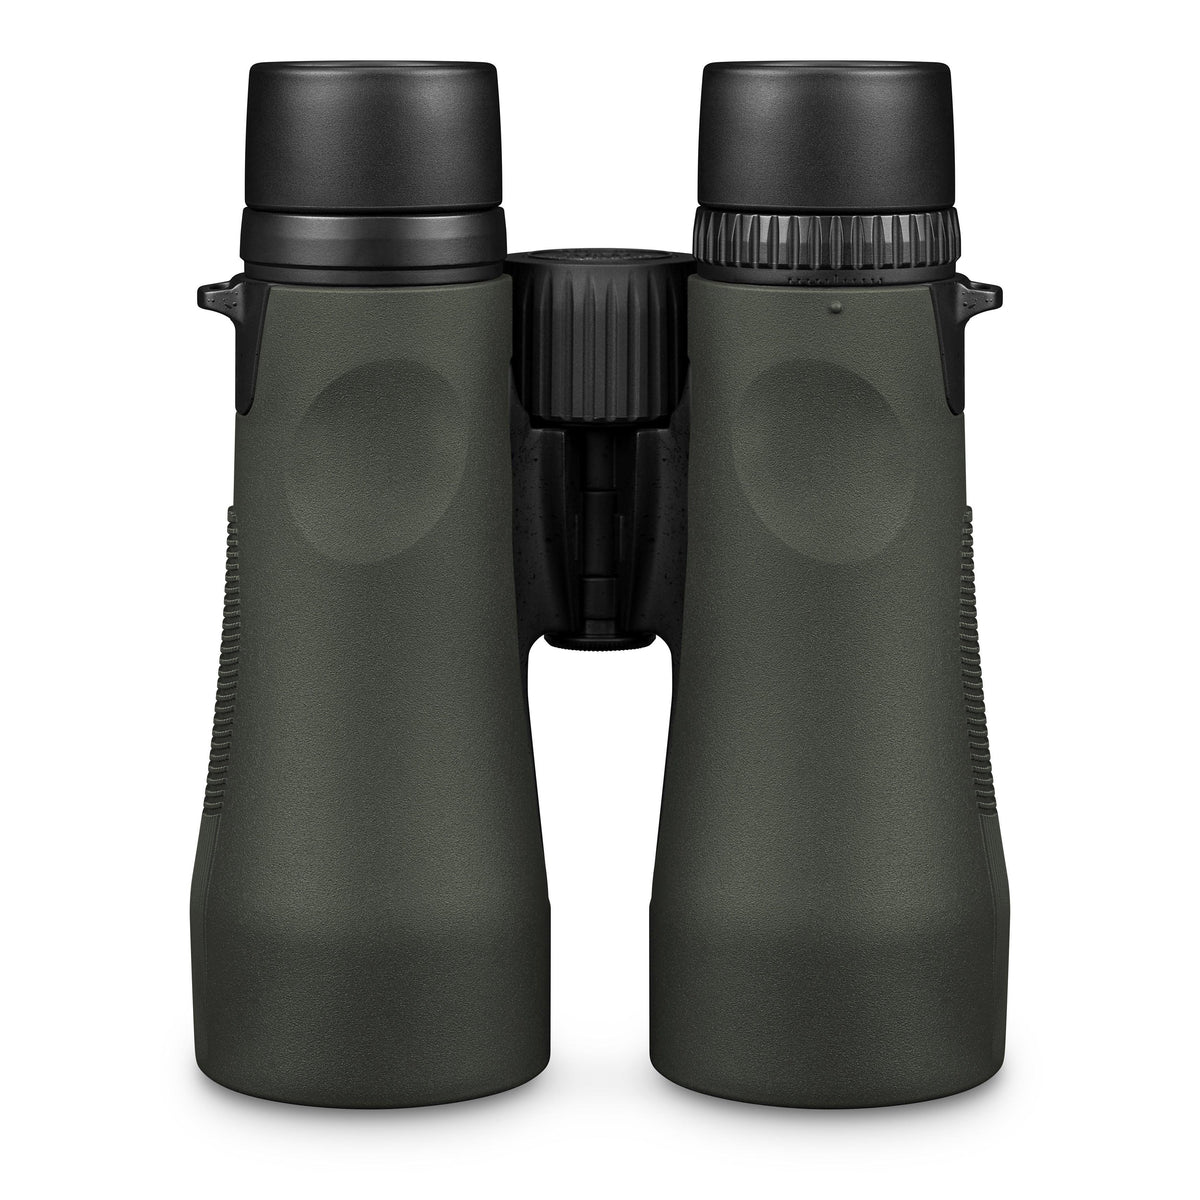 Vortex Diamondback HD 12x50 Binoculars - TALON GEAR